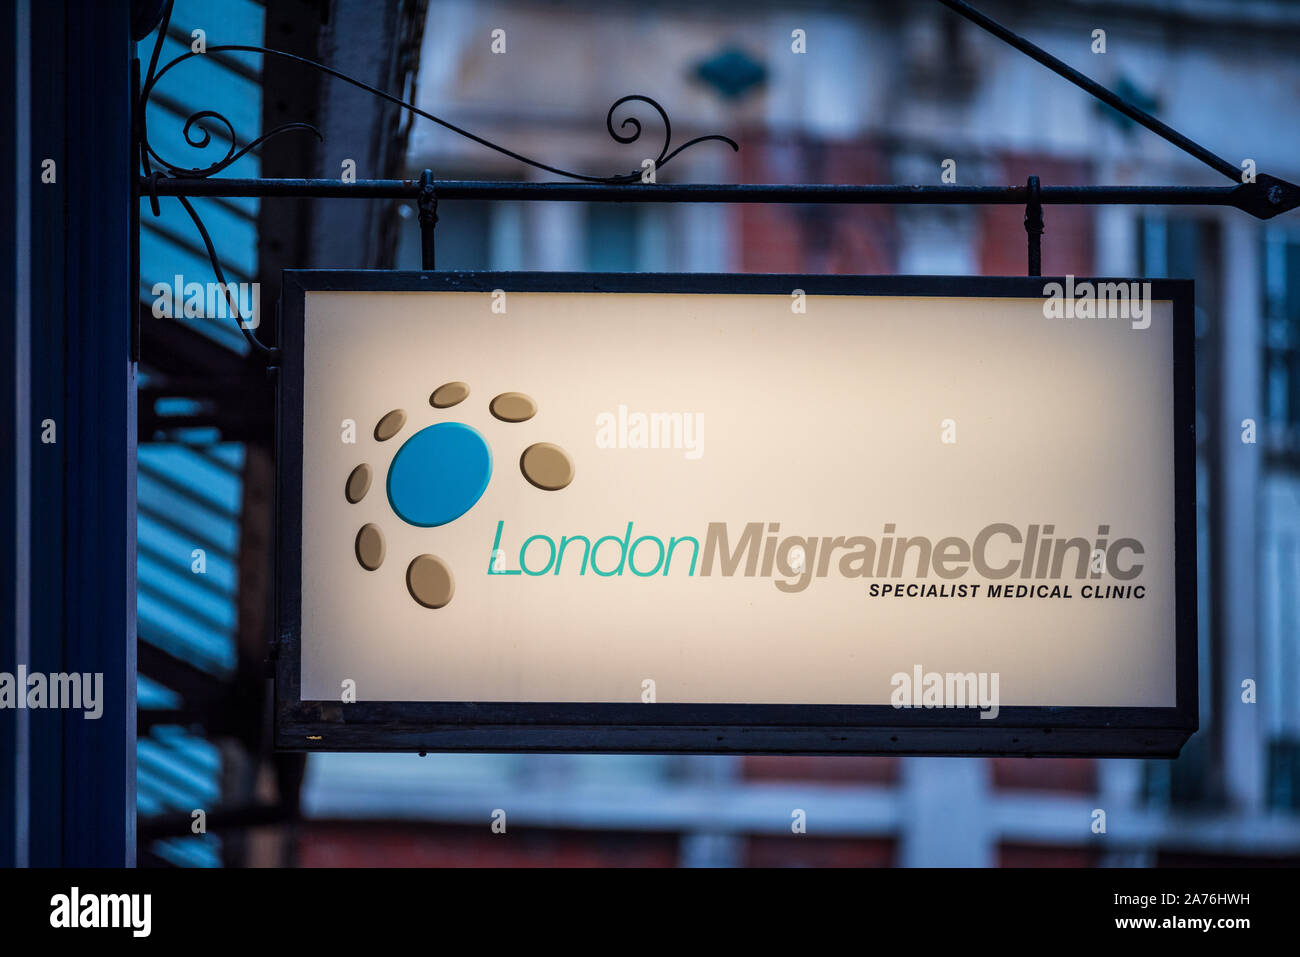 London Migräne Klinik unterzeichnen. London Migräne Klinik ist ein eigenes Migräne Klinik in Leadenhall Market in der City von London Financial District. Stockfoto